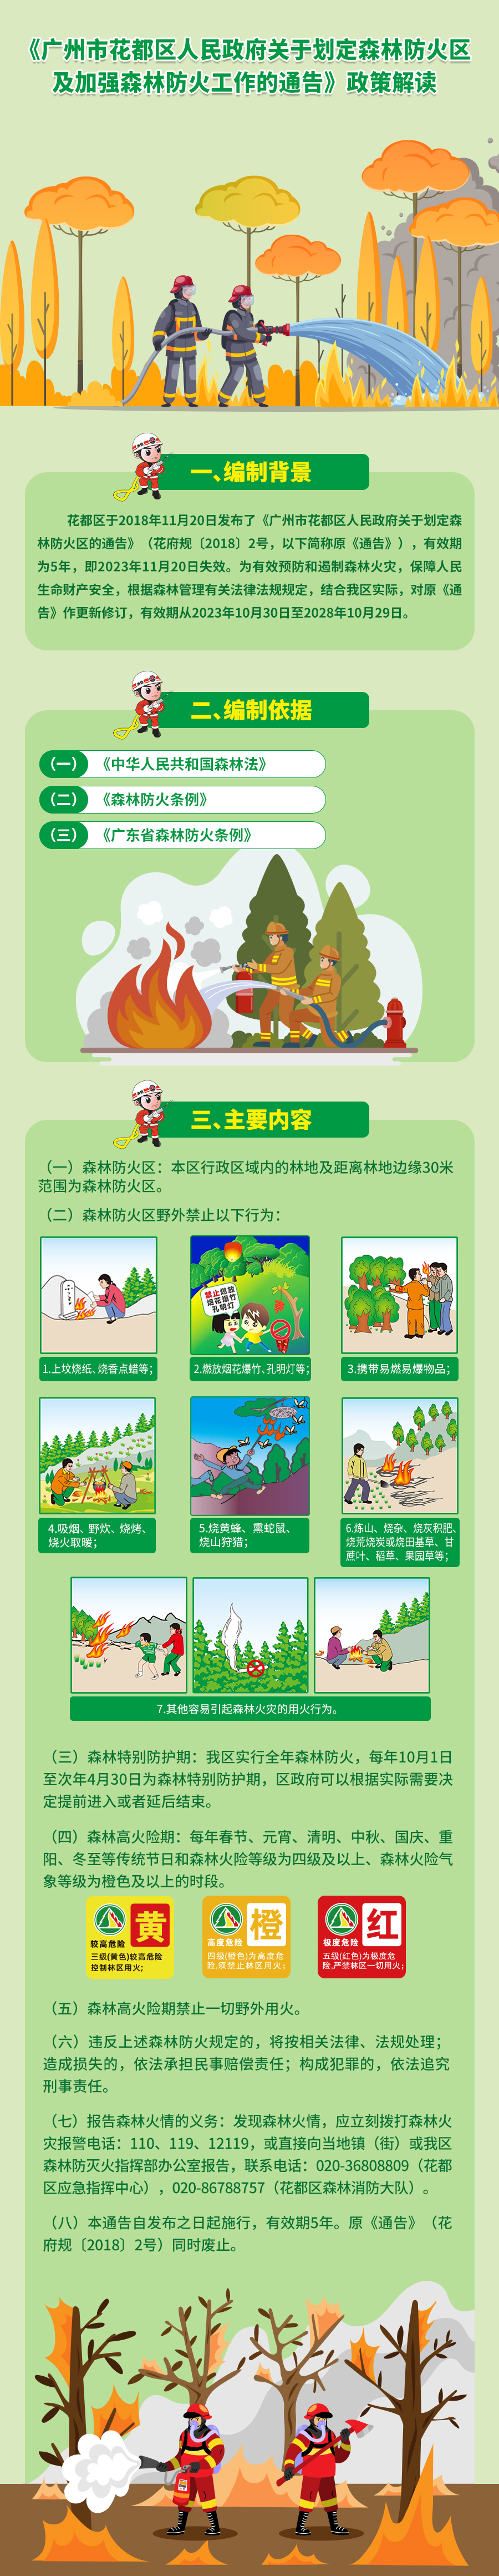 （以此为准）《广州市花都区人民政府关于划定森林防火区及加强森林防火工作的通告》政策解读图文.jpg